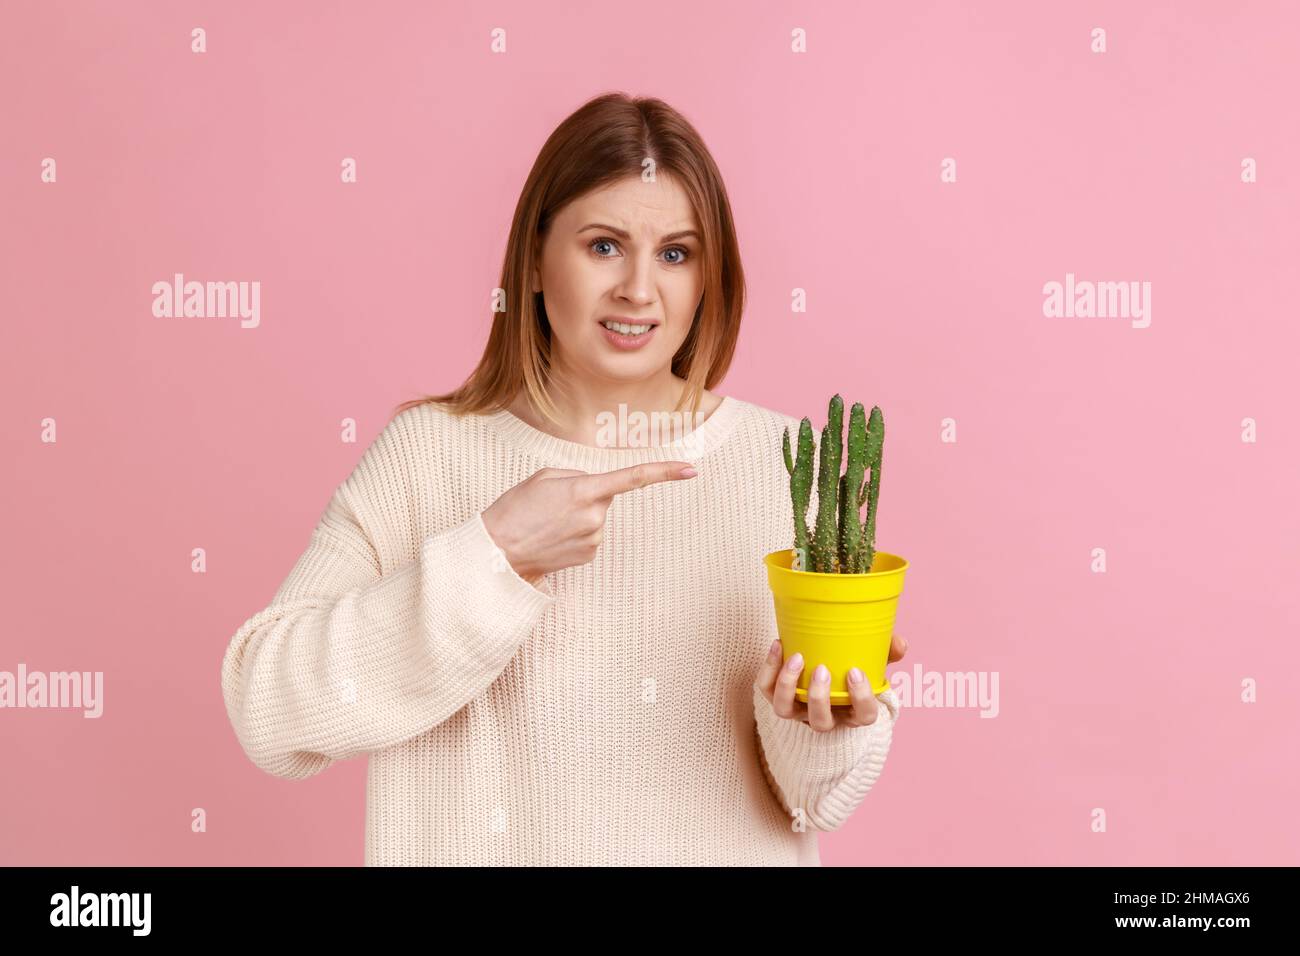 Ritratto di giovane donna bionda adulta con volto accigliato che tiene e punta al vaso giallo fiore con pungente fiore di cactus, indossando maglione bianco. Studio interno girato isolato su sfondo rosa. Foto Stock